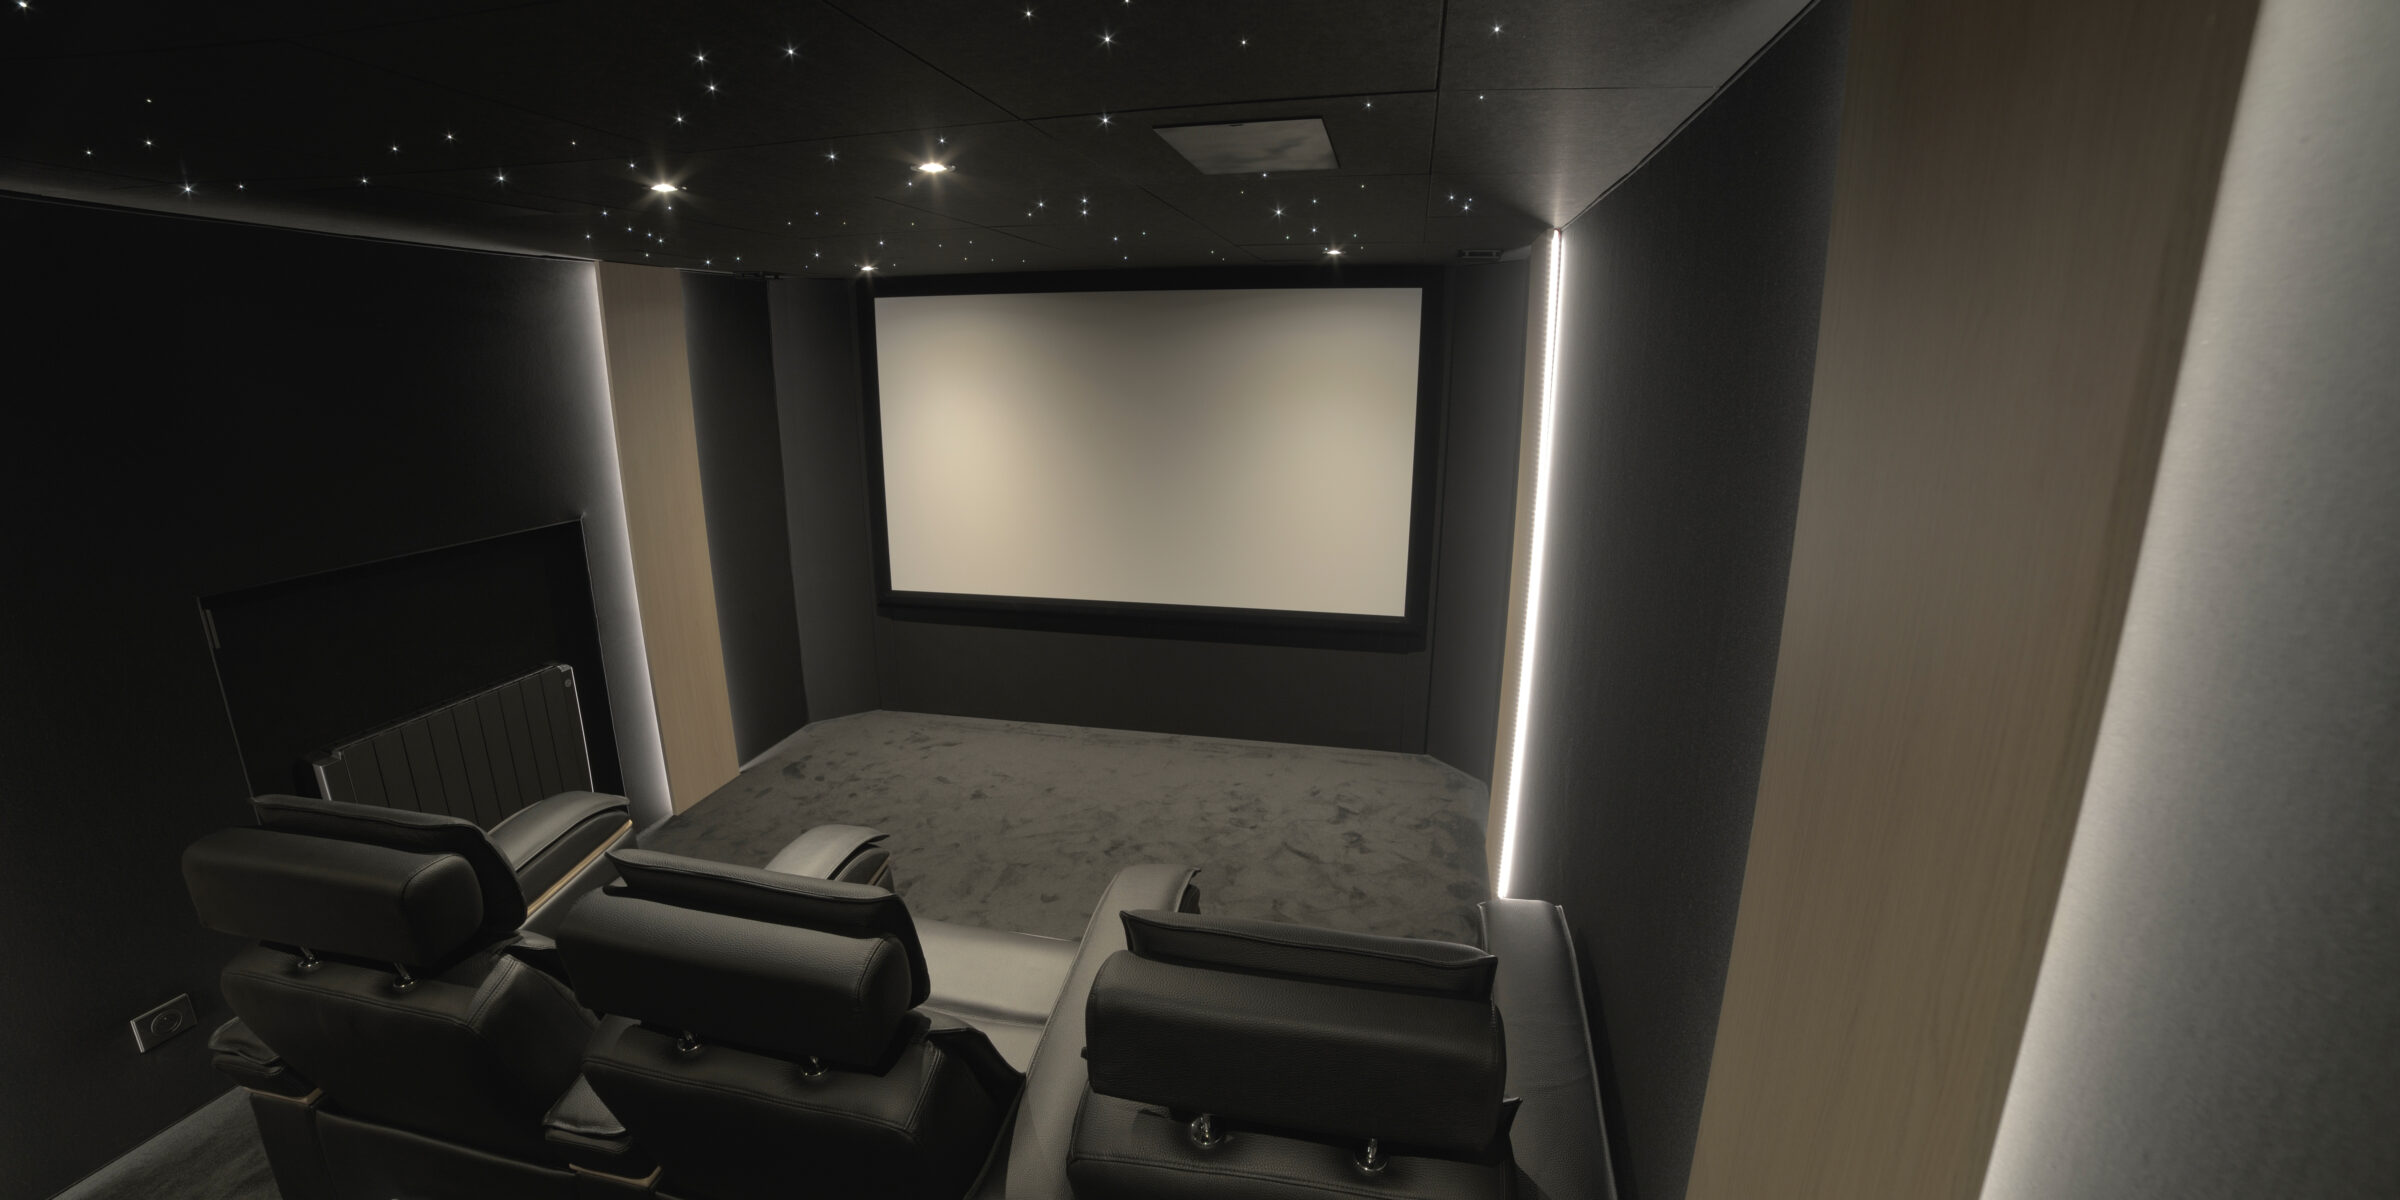 Salle de cinéma privée 17m2 avec 5 fauteuils en cuir noir, ciel étoilé, spots, panneaux décor chêne rétro-éclairés à Créteil